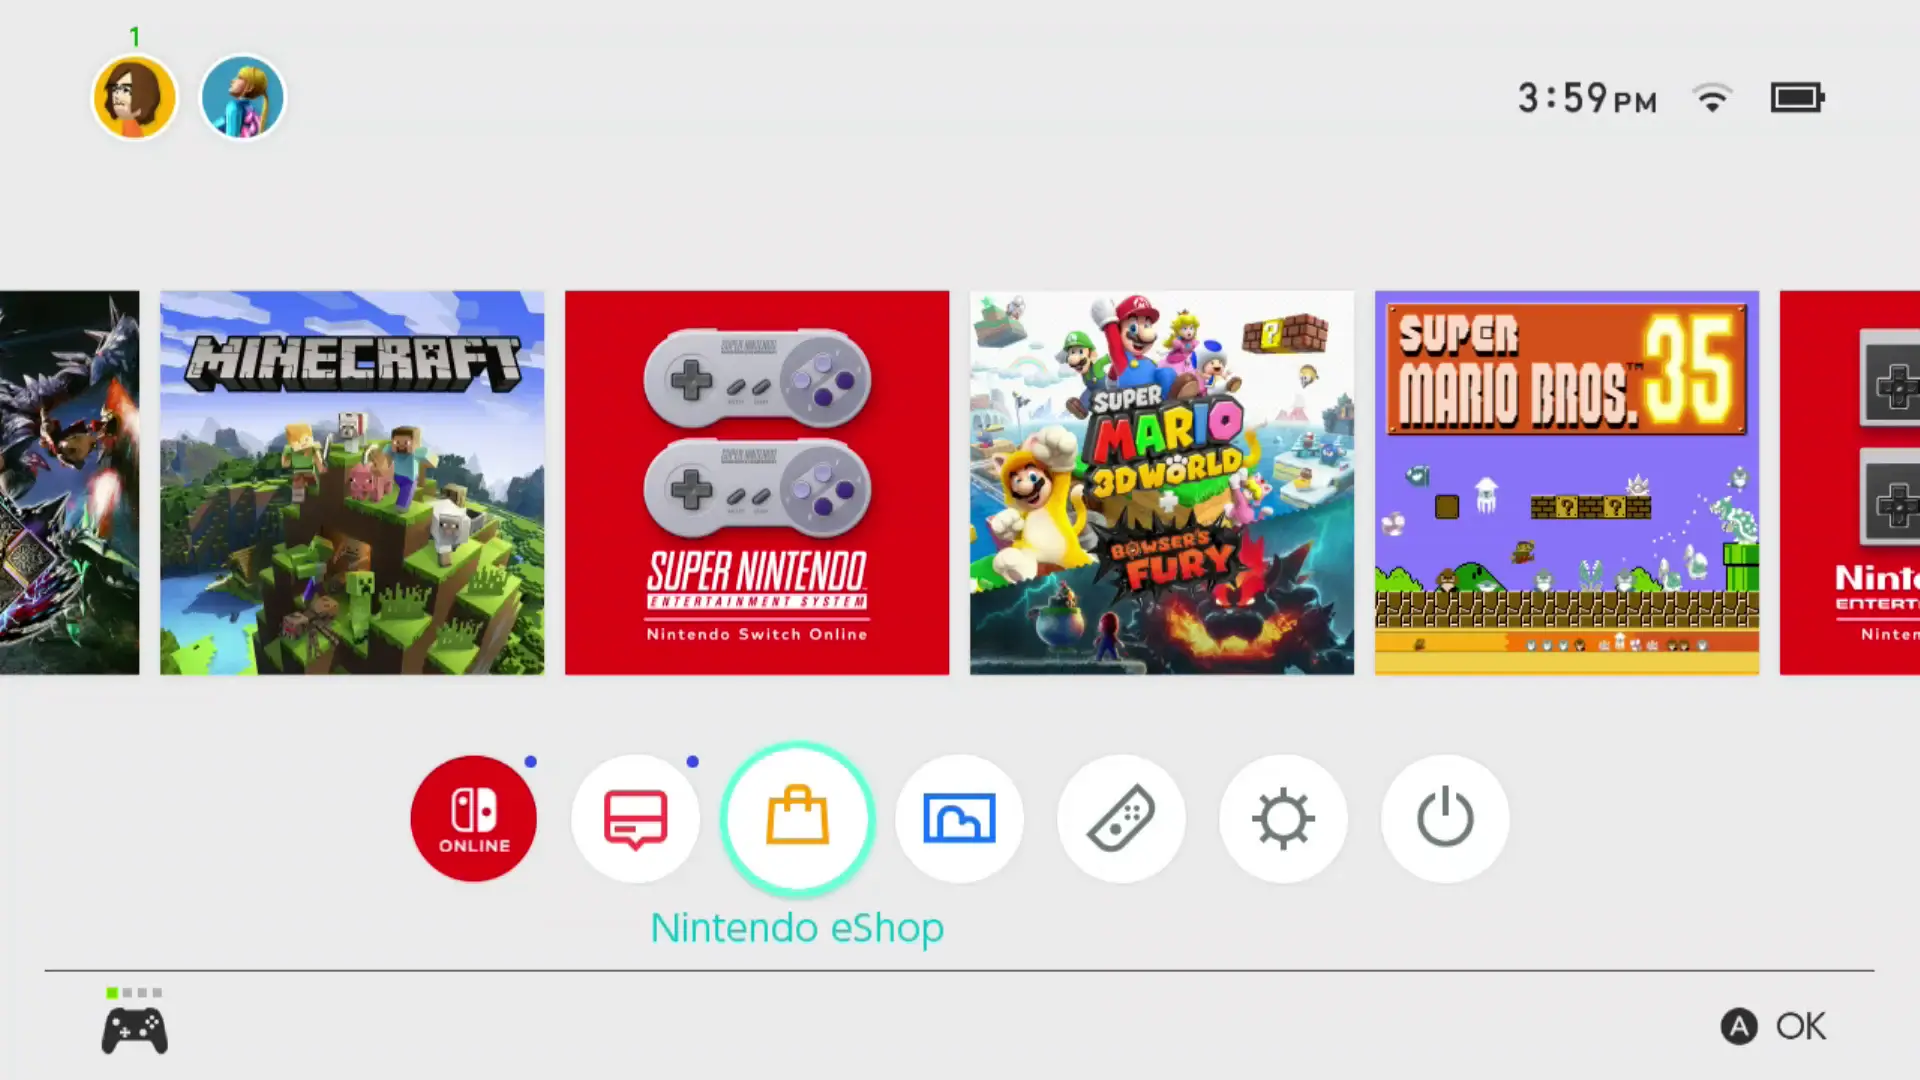 Nintendo eShop em destaque na tela inicial do Nintendo Switch.